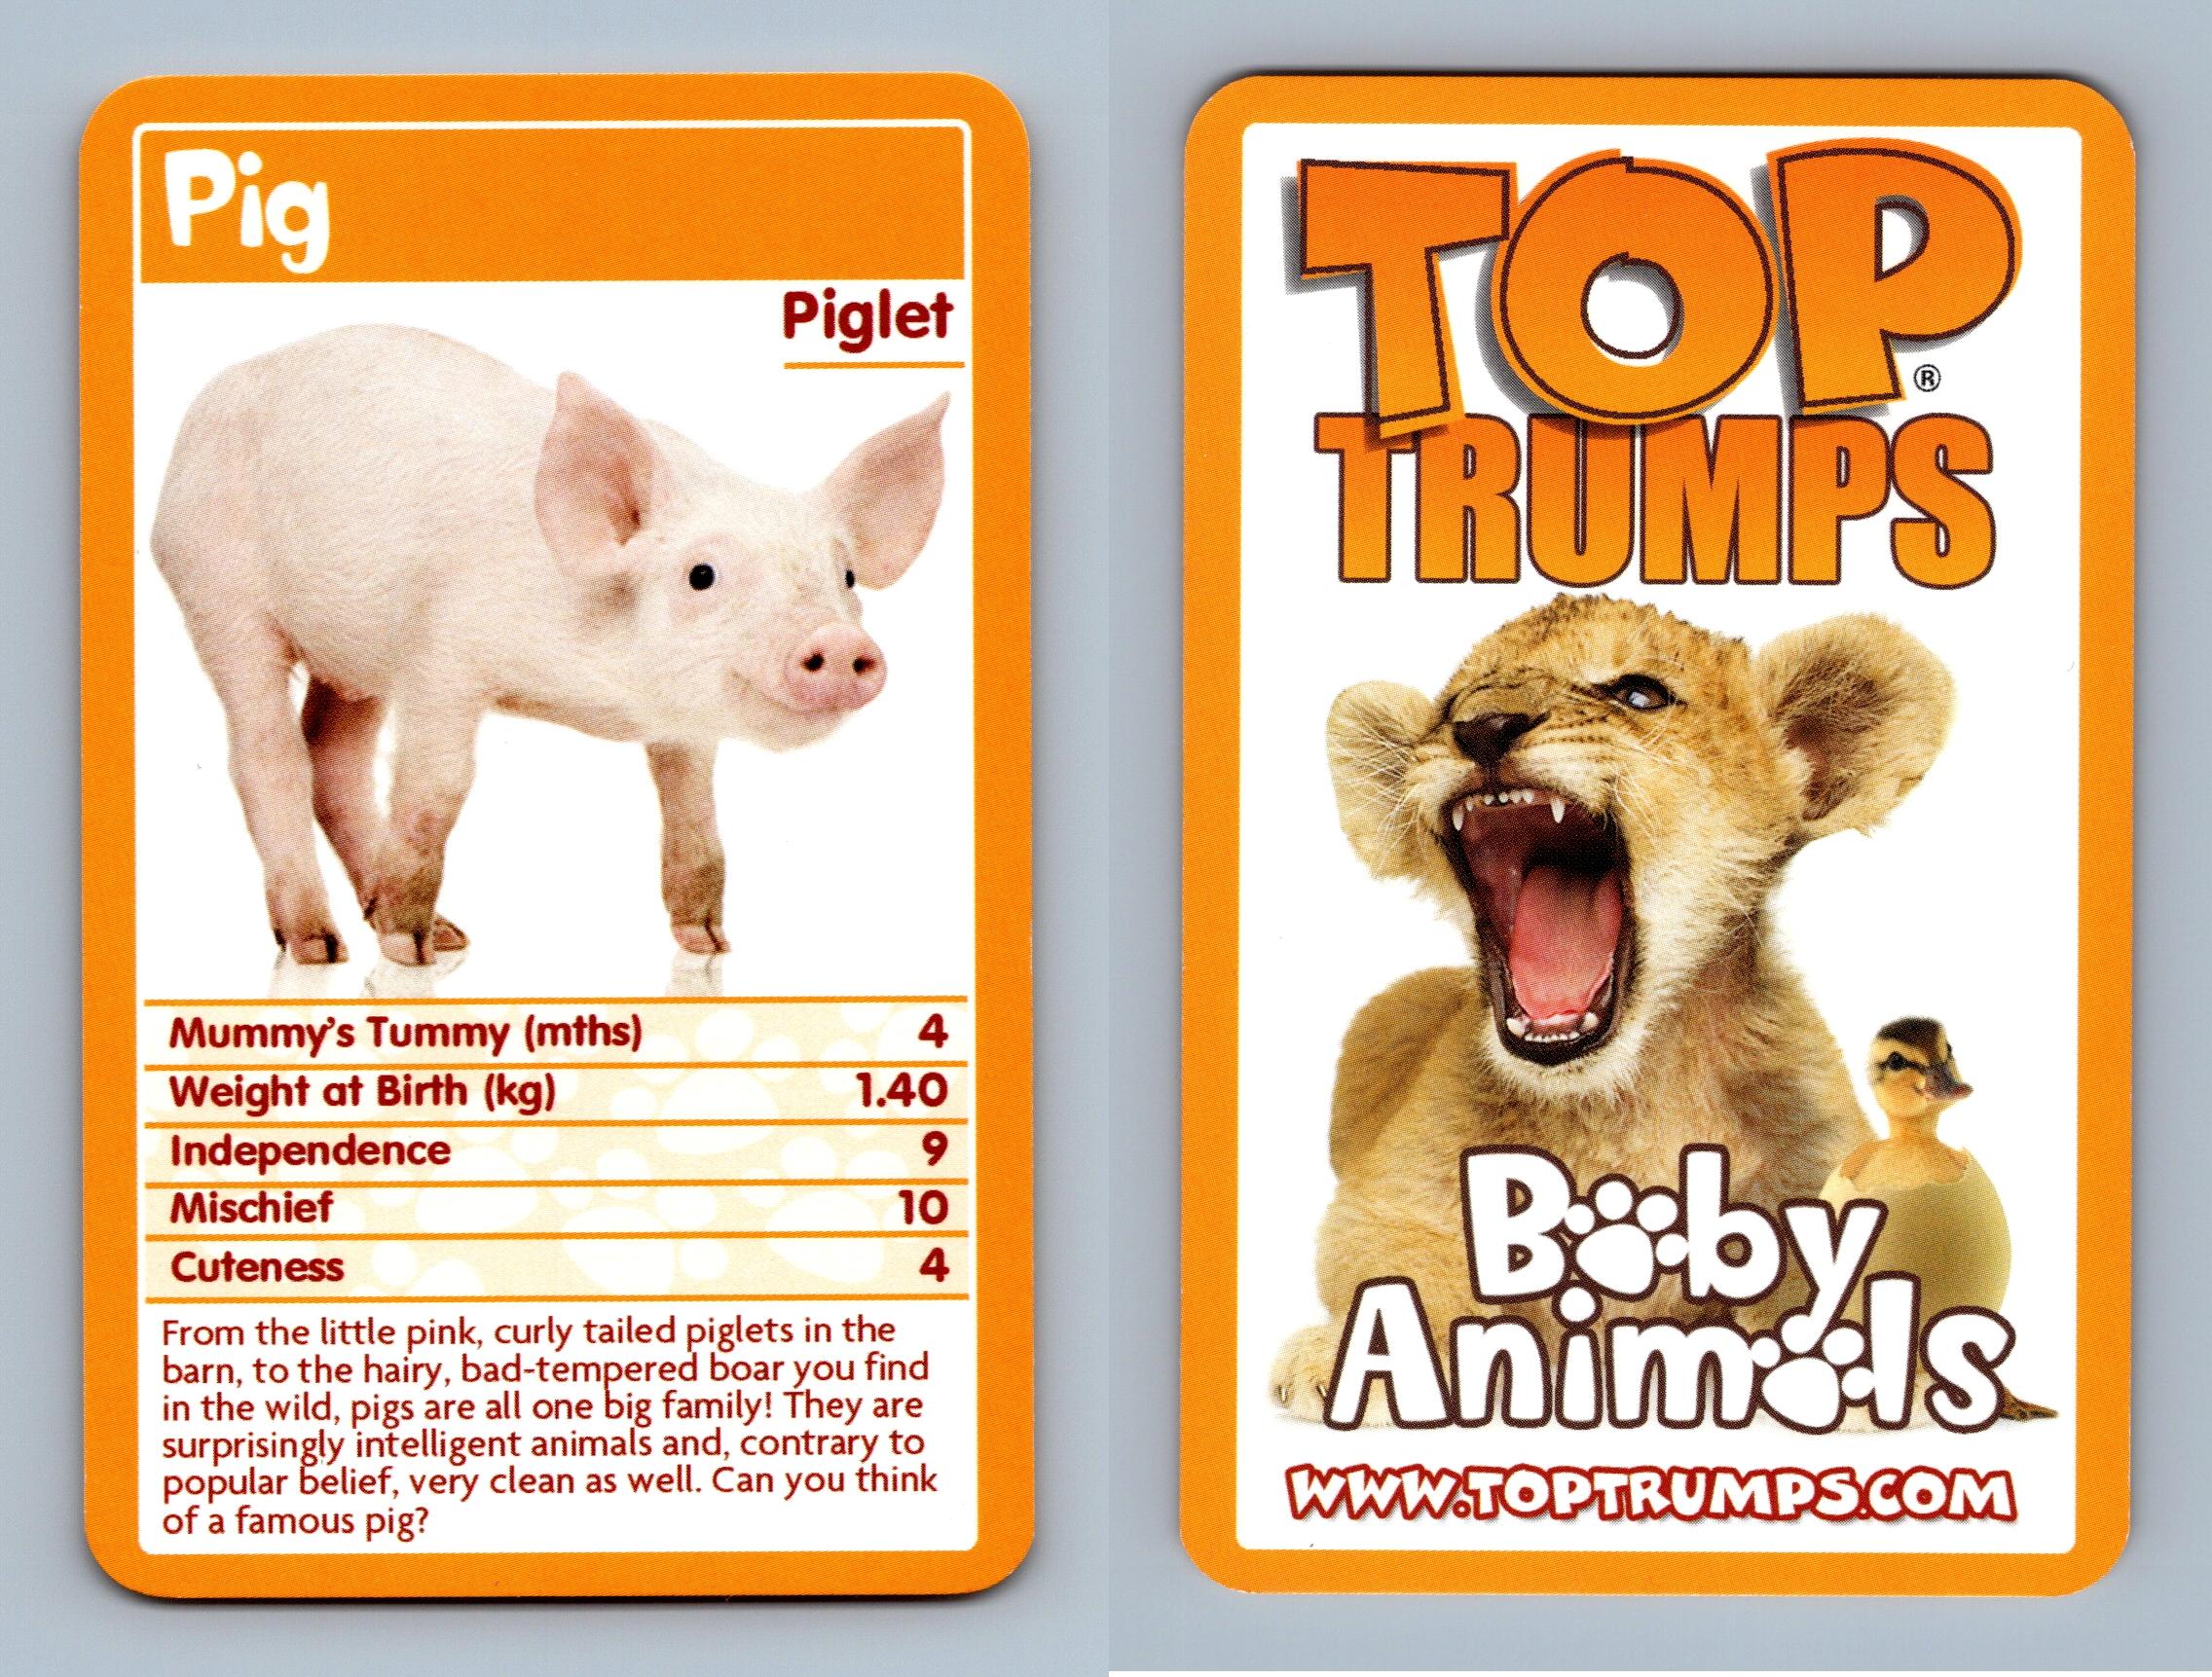 Pig/Lechlet - Baby Animals 2009 Top Trumps Card - Imagen 1 de 1